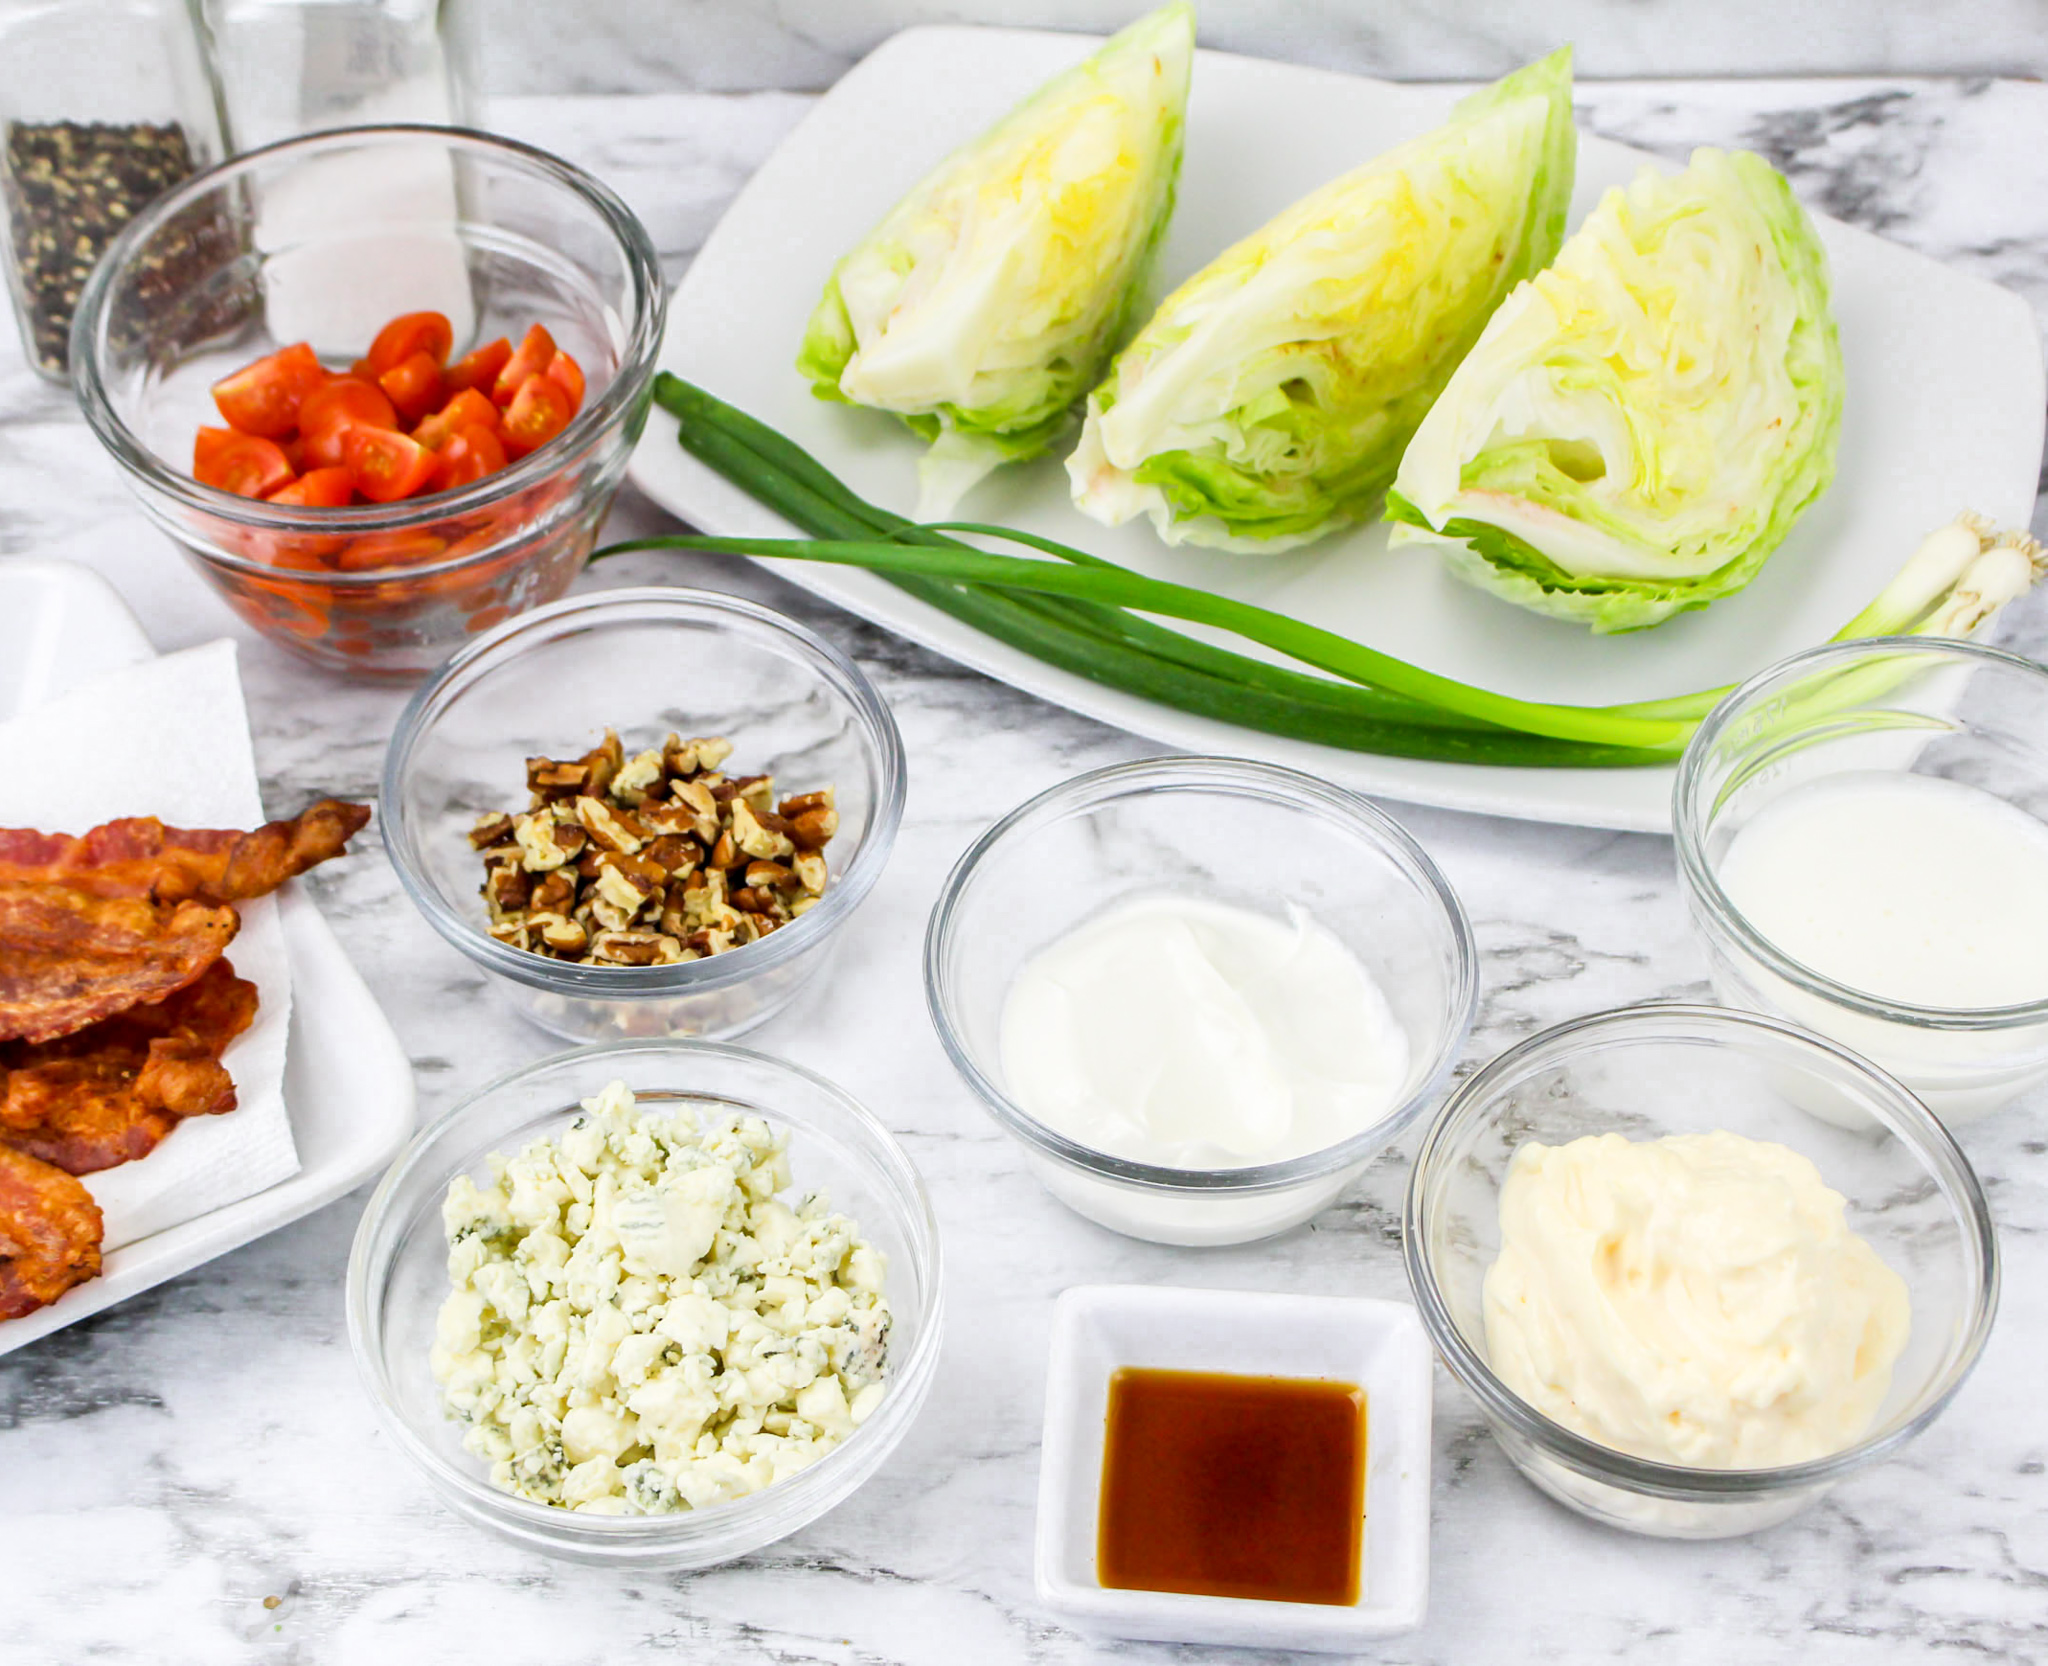 salad ingredients